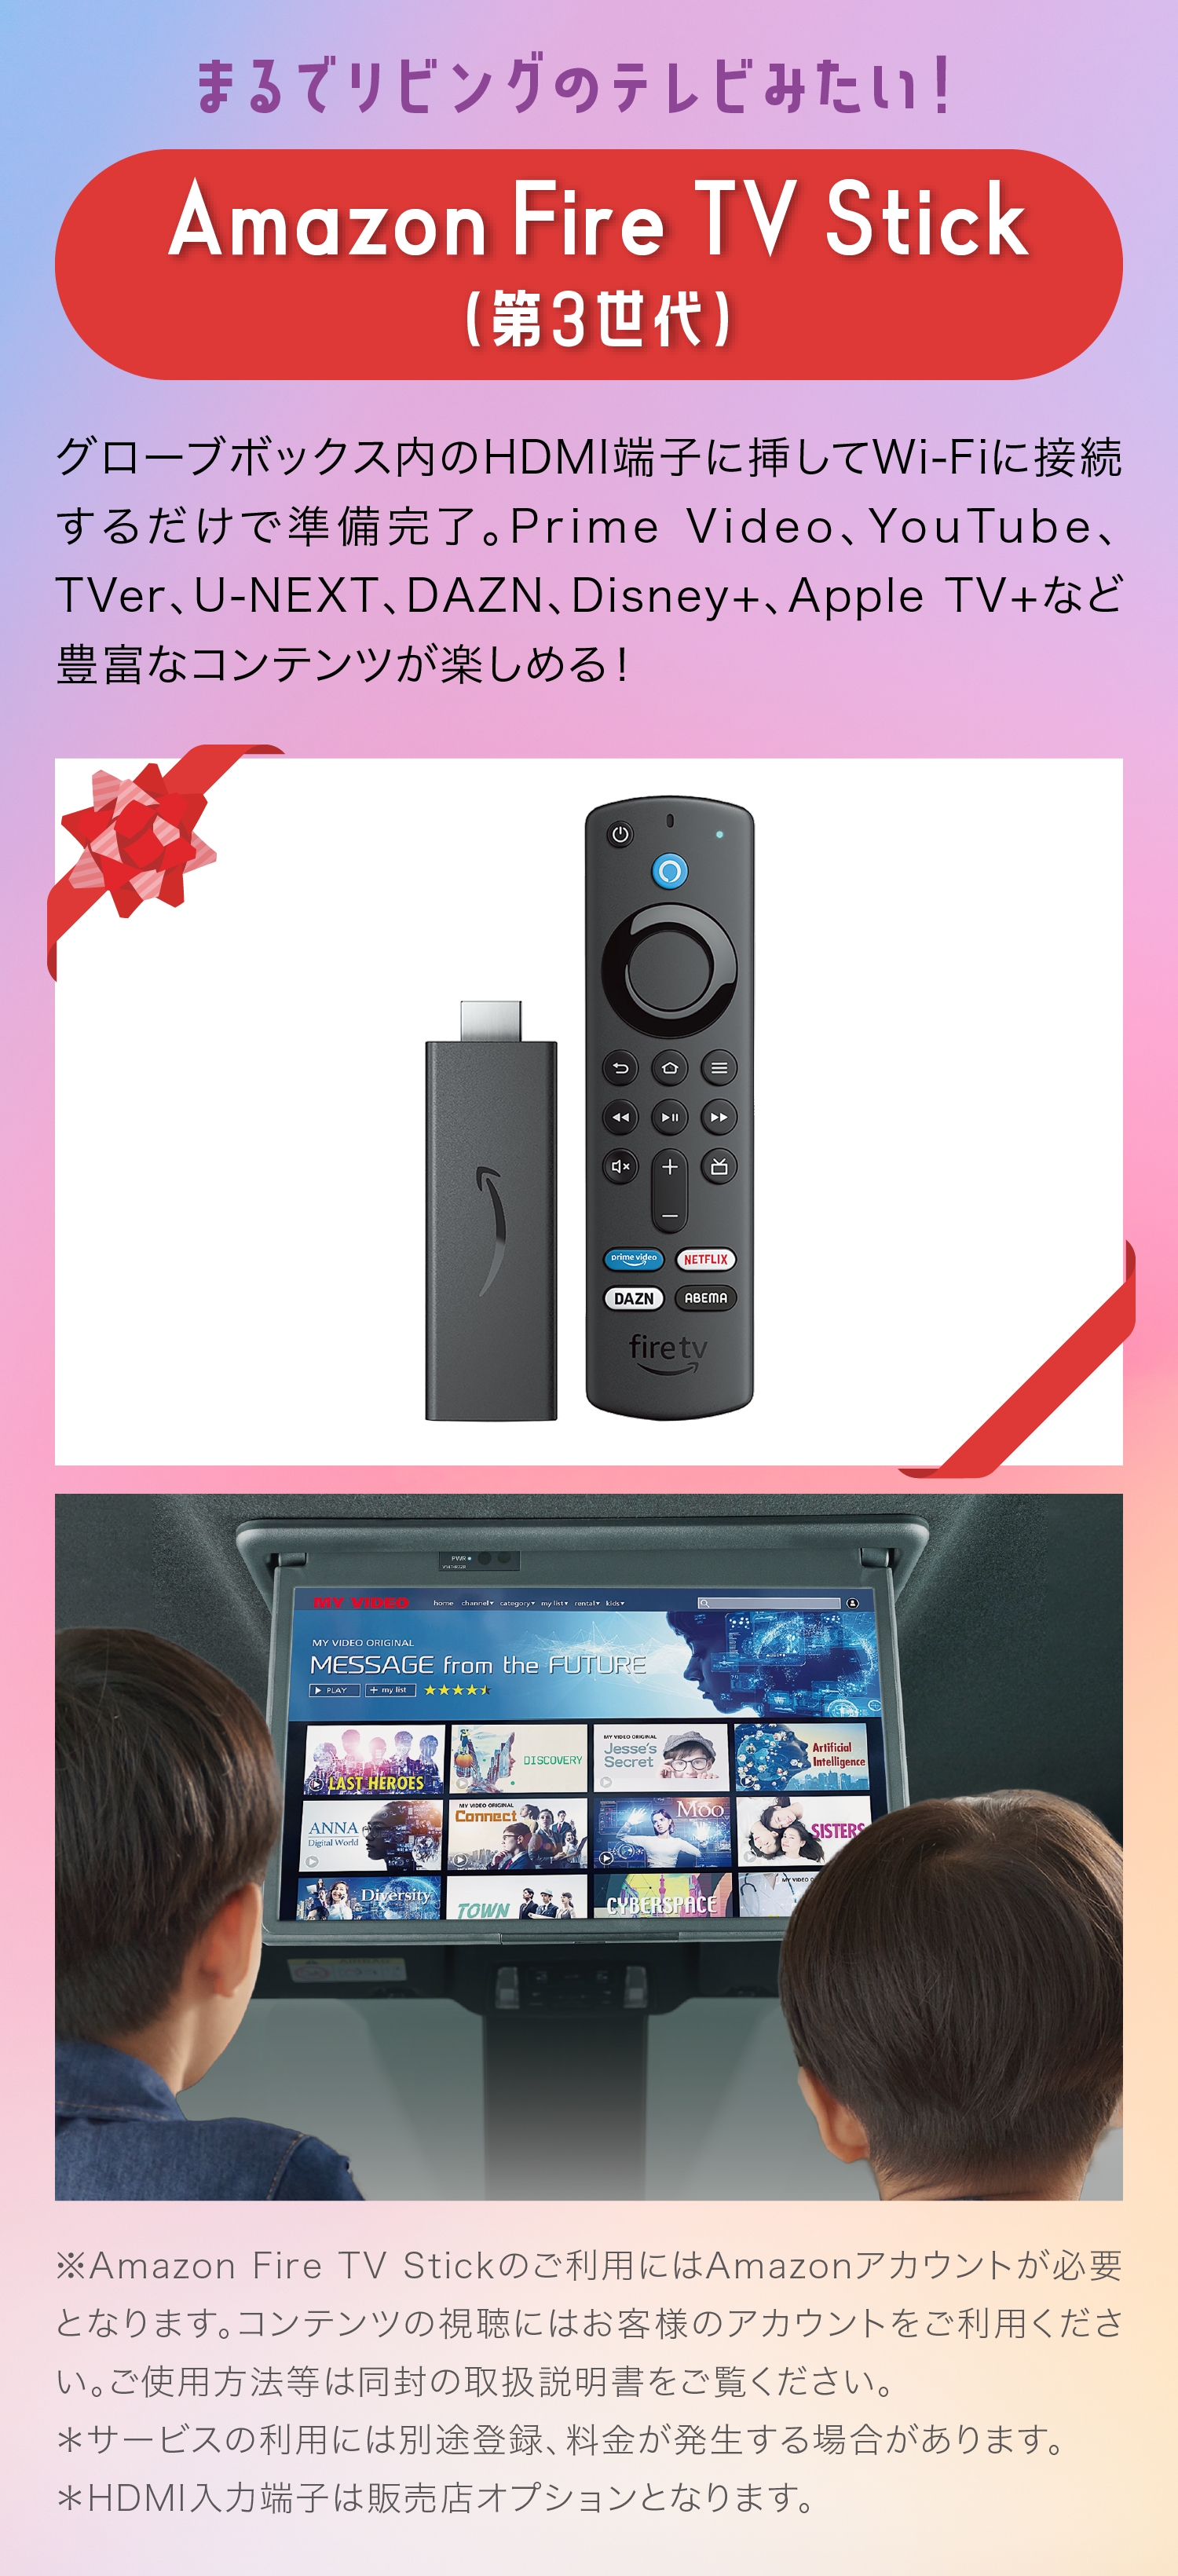 まるでリビングのテレビみたい！Amazon Fire TV Stick（第3世代）グローブボックス内のHDMI端子に挿してWi-Fiに接続するだけで準備完了。Prime Video、YouTube、 TVer、U-NEXT、DAZN、Disney+、Apple TV+など豊富なコンテンツが楽しめる！※Amazon Fire TV Stickのご利用にはAmazonアカウントが必要となります。コンテンツの視聴にはお客様のアカウントをご利用ください。ご使用方法等は同封の取扱説明書をご覧ください。＊サービスの利用には別途登録、料金が発生する場合があります。＊HDMI入力端子は販売店オプションとなります。